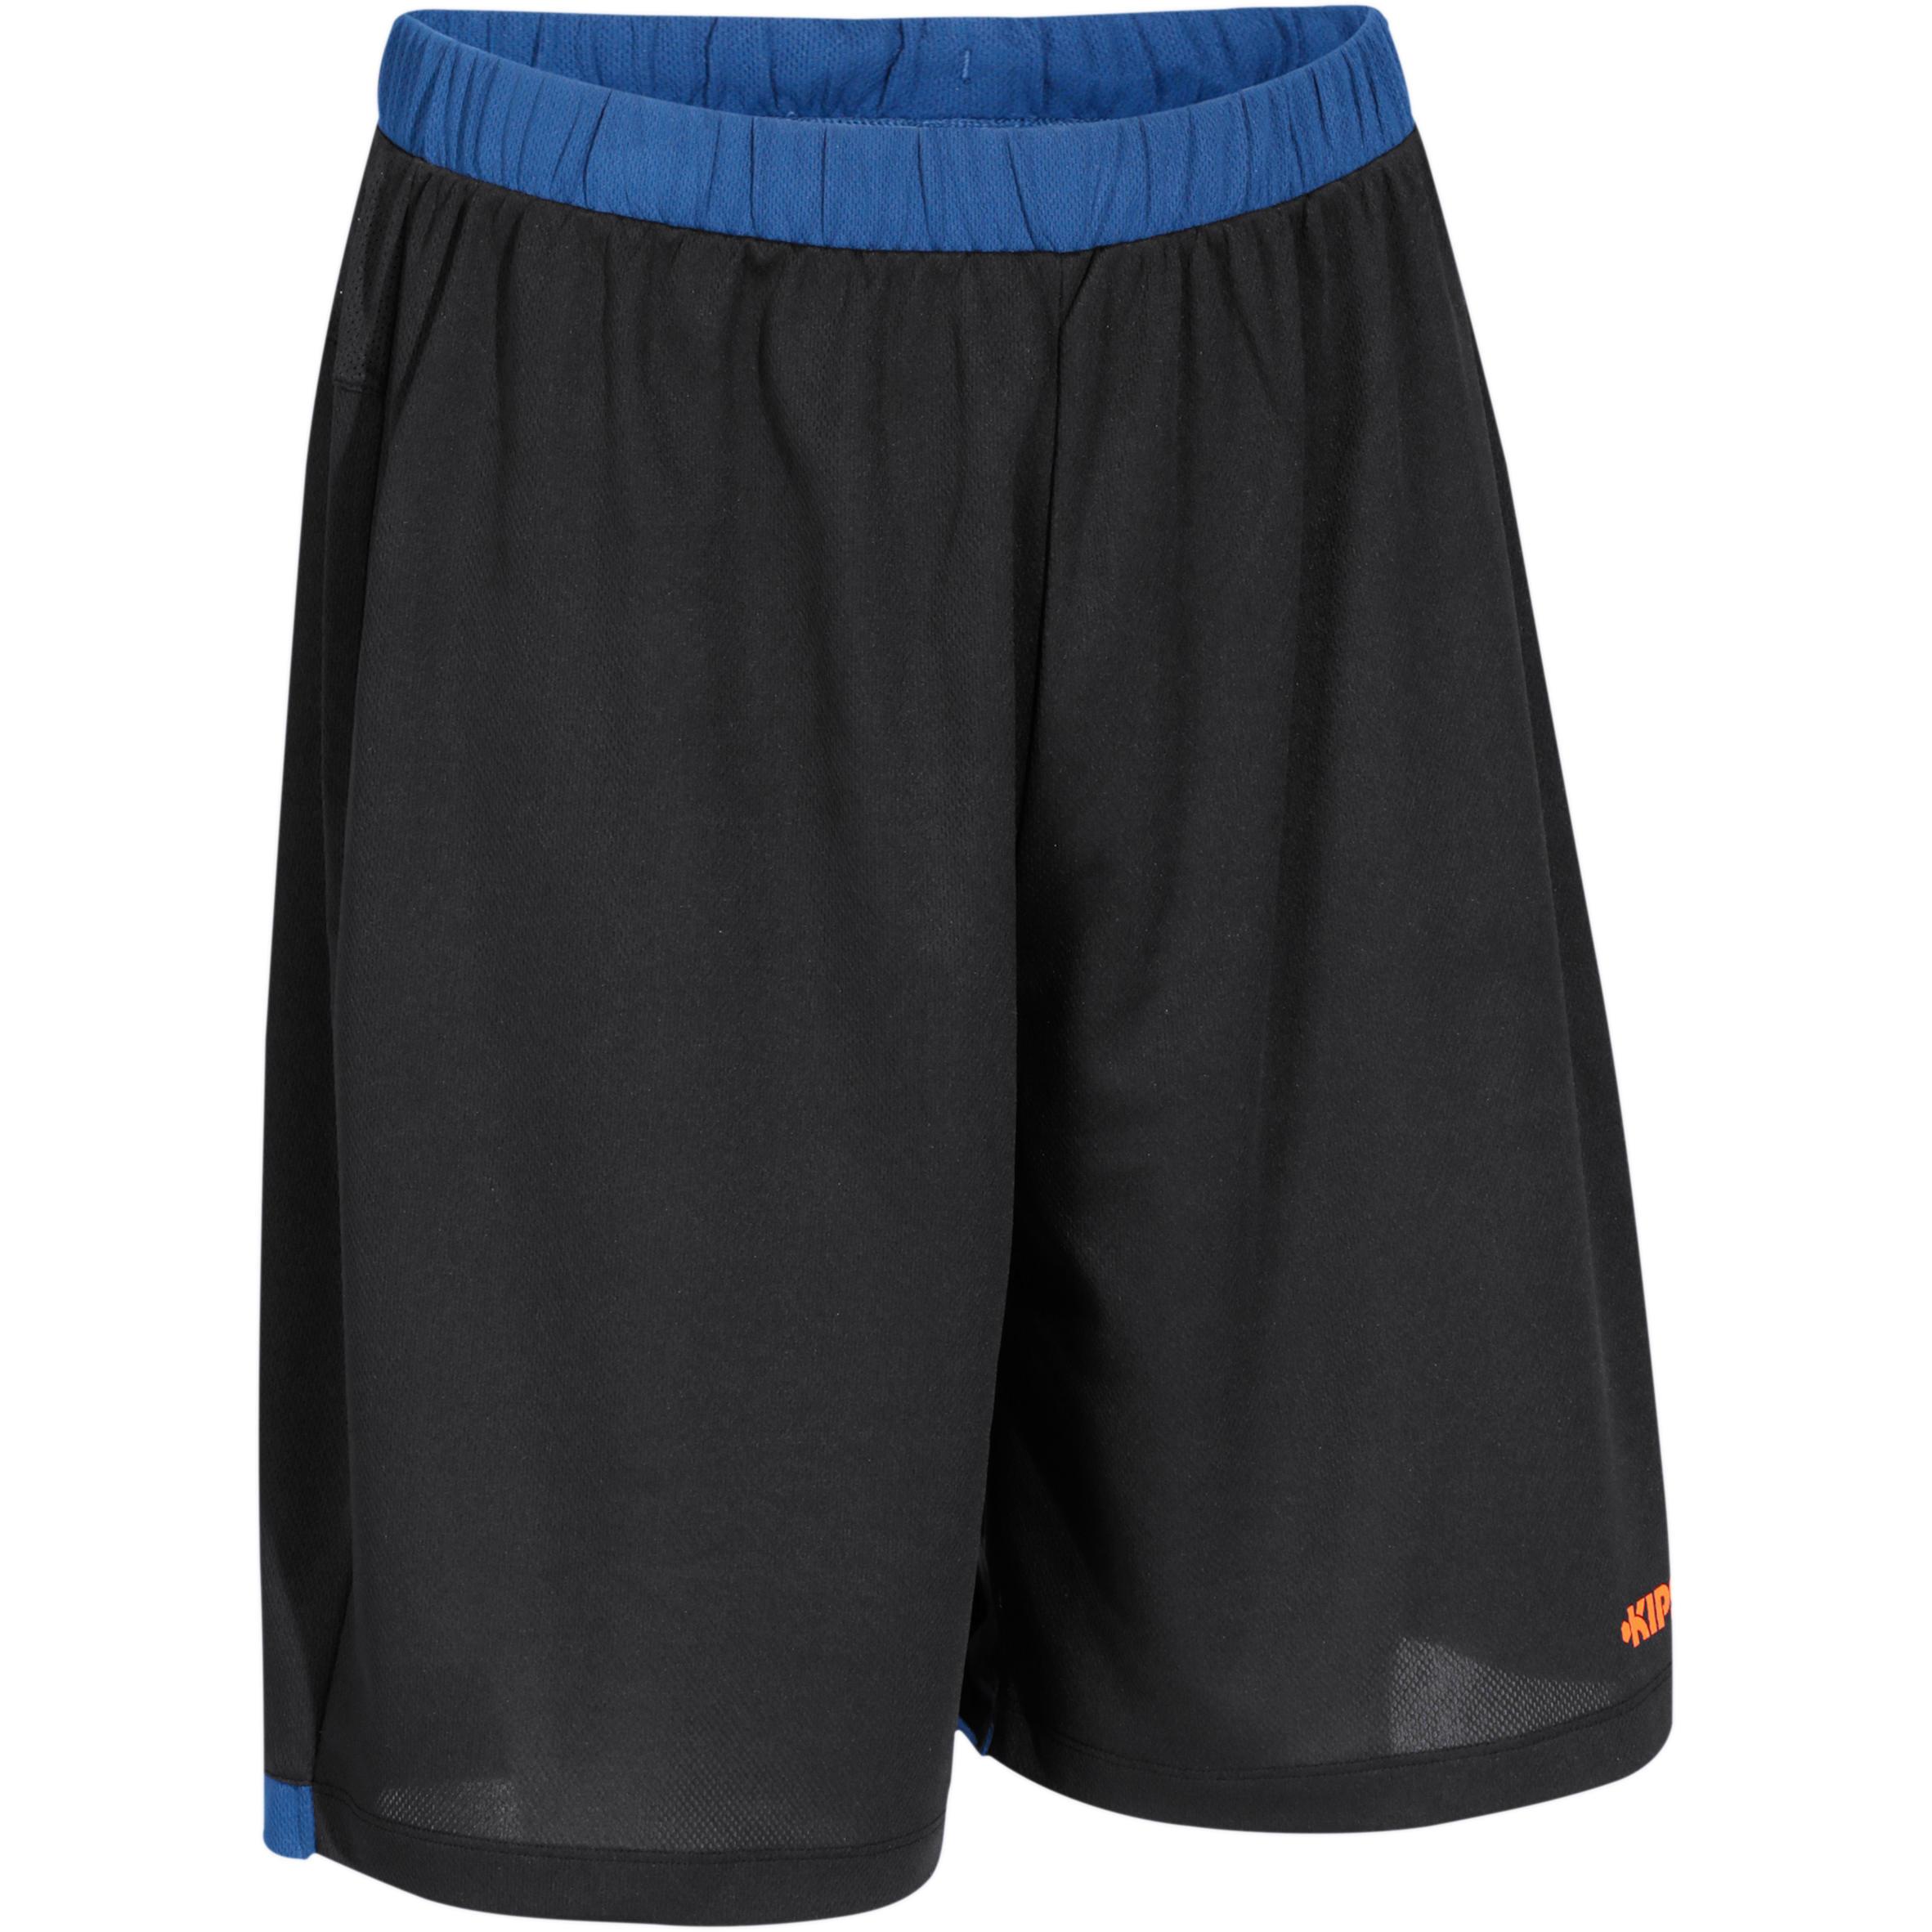 กางเกงบาสเก็ตบอลขาสั้นสำหรับผู้ชายรุ่น B500 (สีกรมท่า/ดำ/ส้ม)